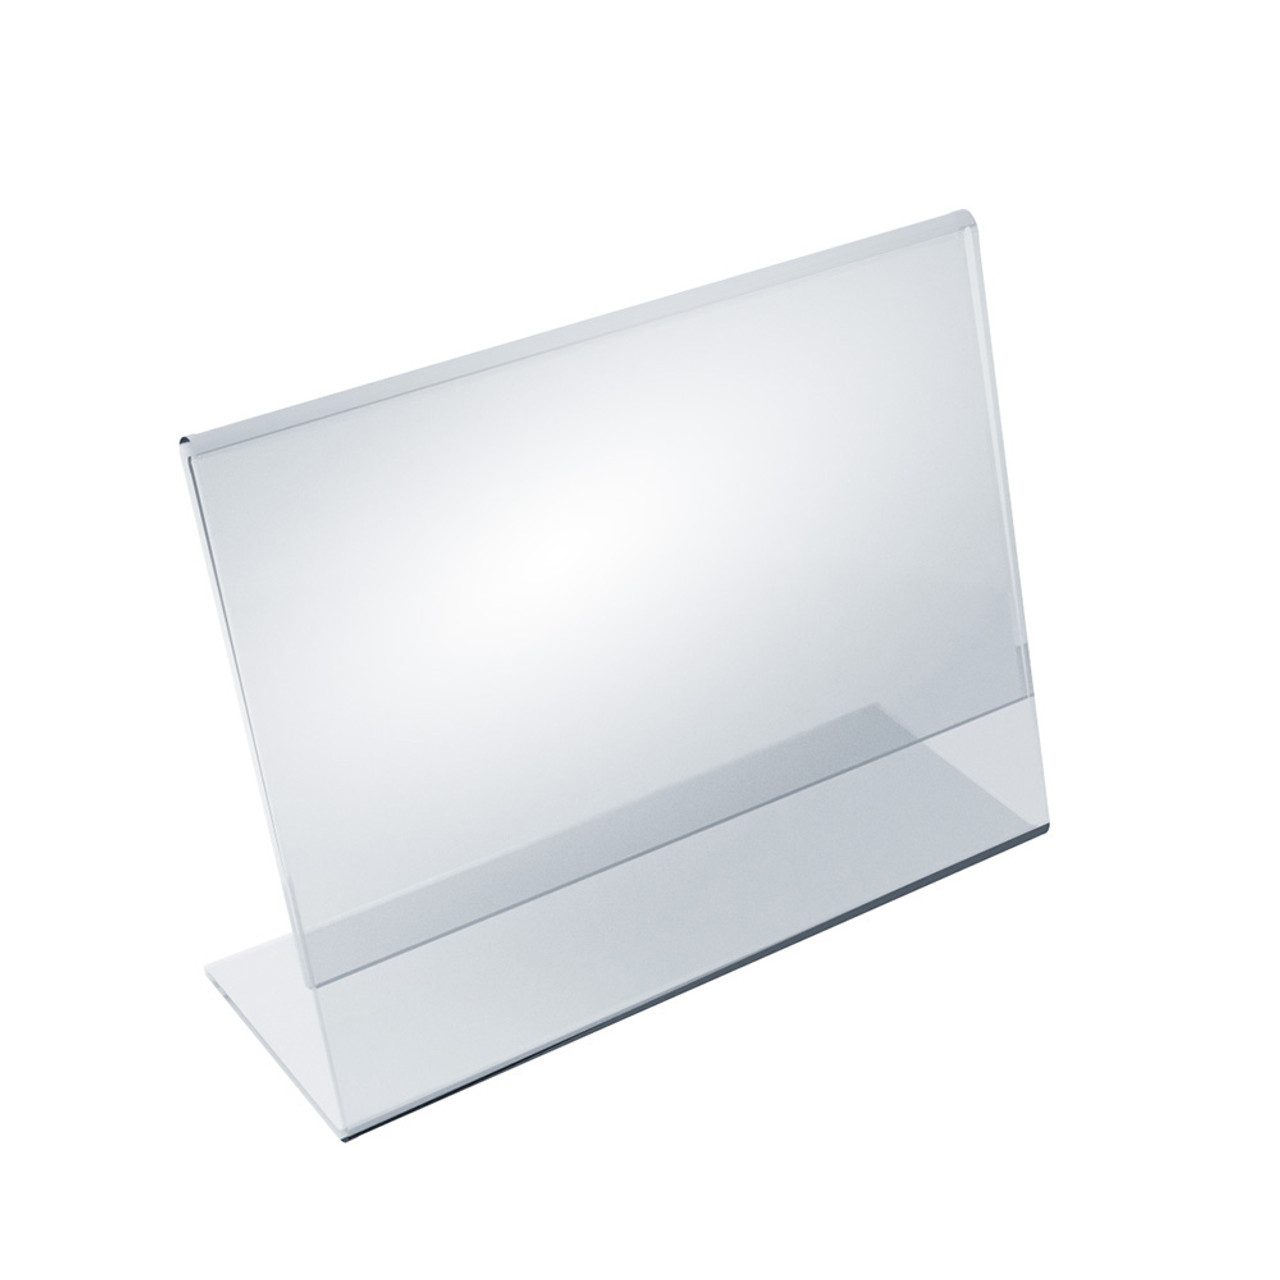 Angled L-Shaped Sign Holder Frame with Slant Back Design 7x 5.5''High-  Horizontal/Landscape